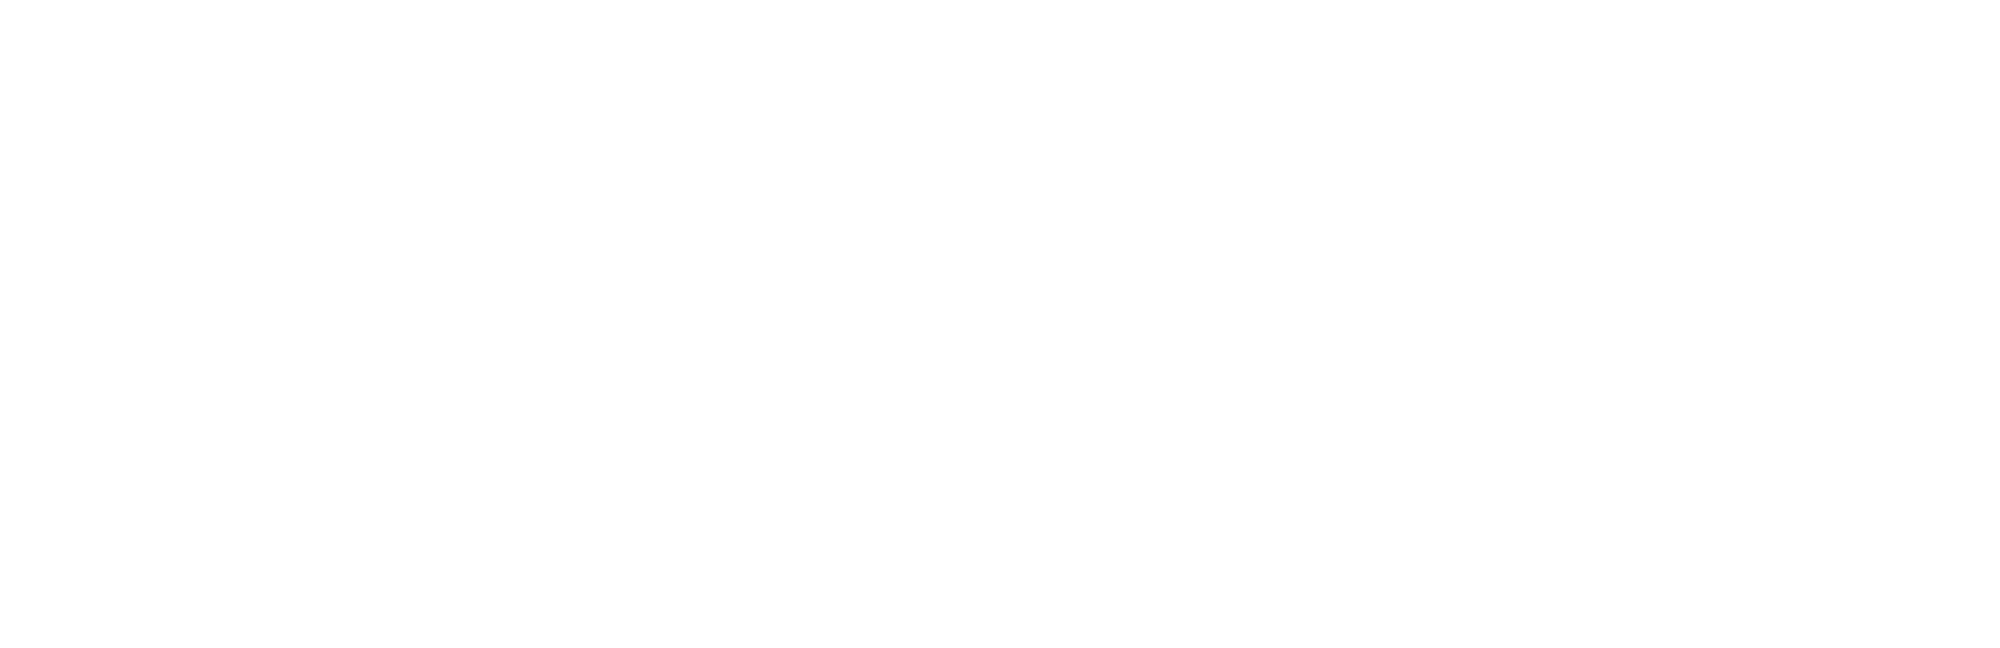 KMW_Weißgrau